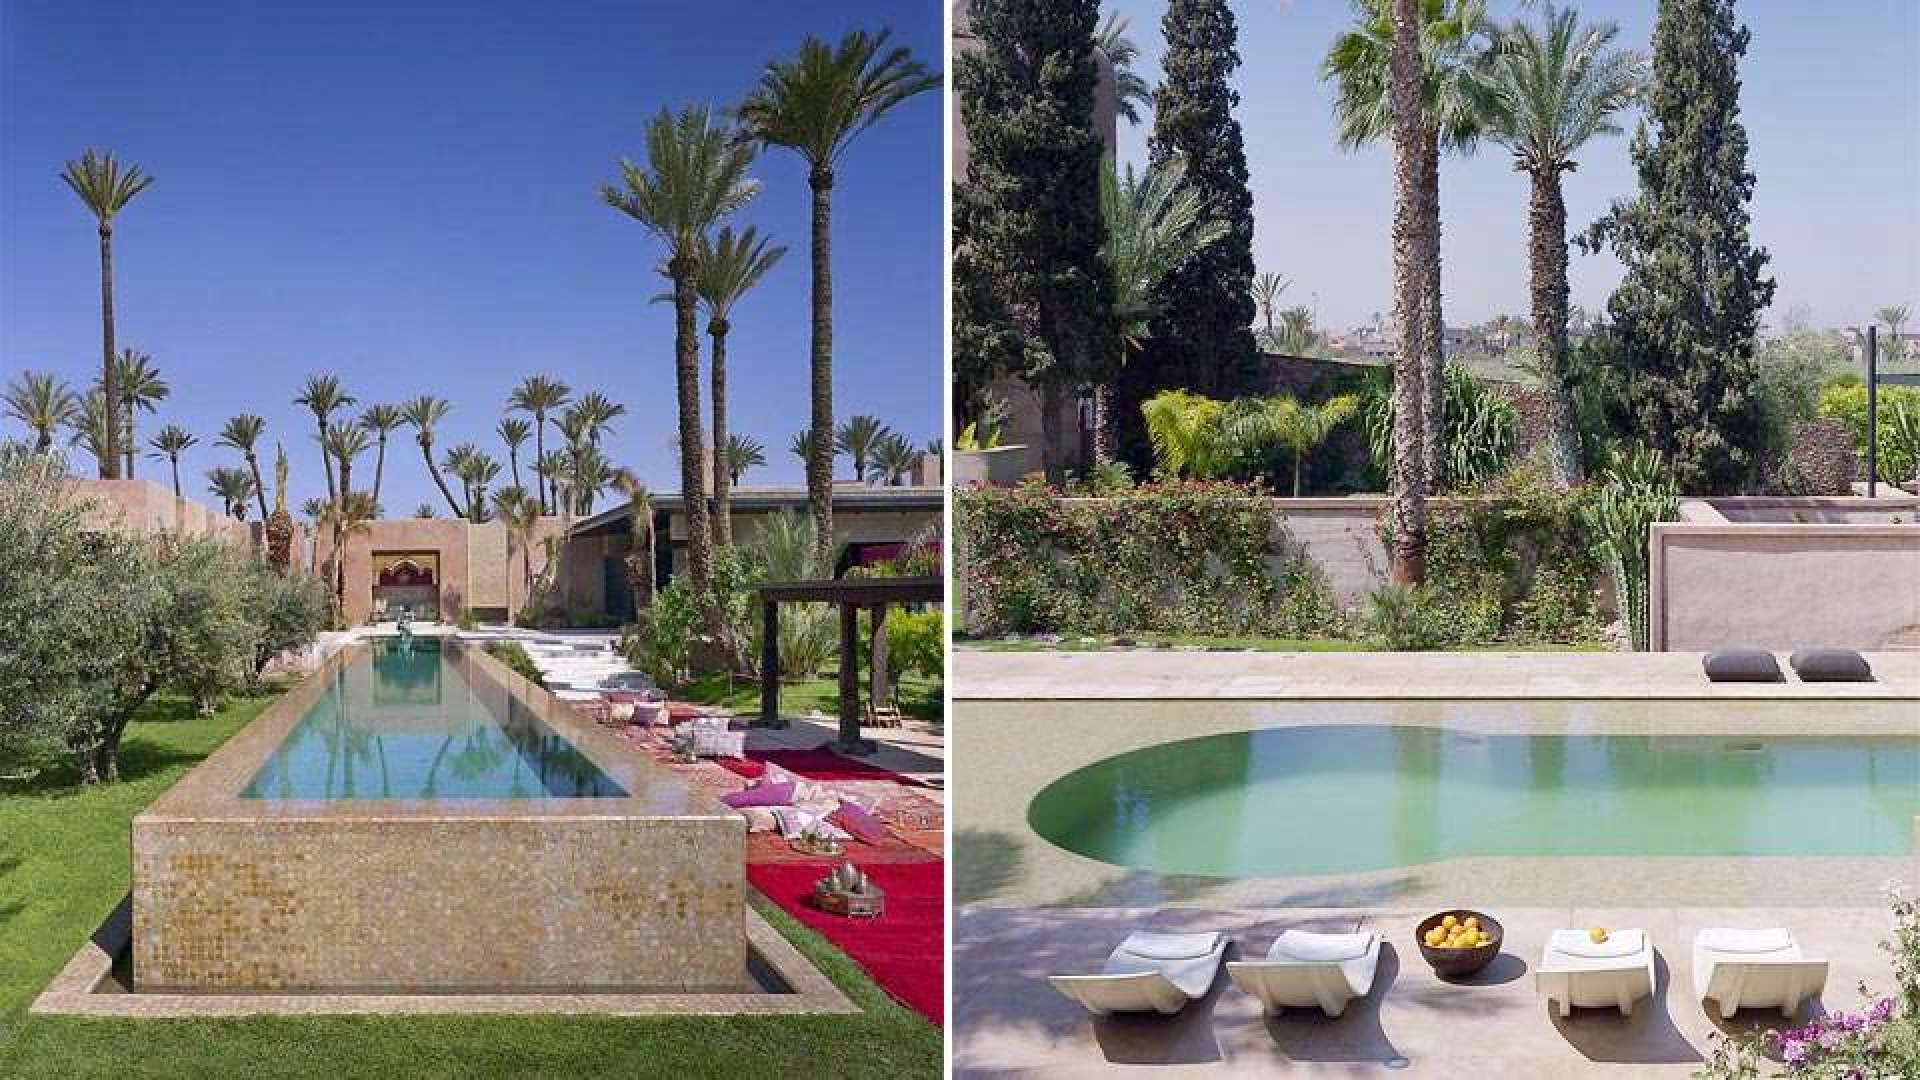 Location de vacances,Villa,PROPRIETE DE LUXE À MARRAKECH,Marrakech,Palmeraie